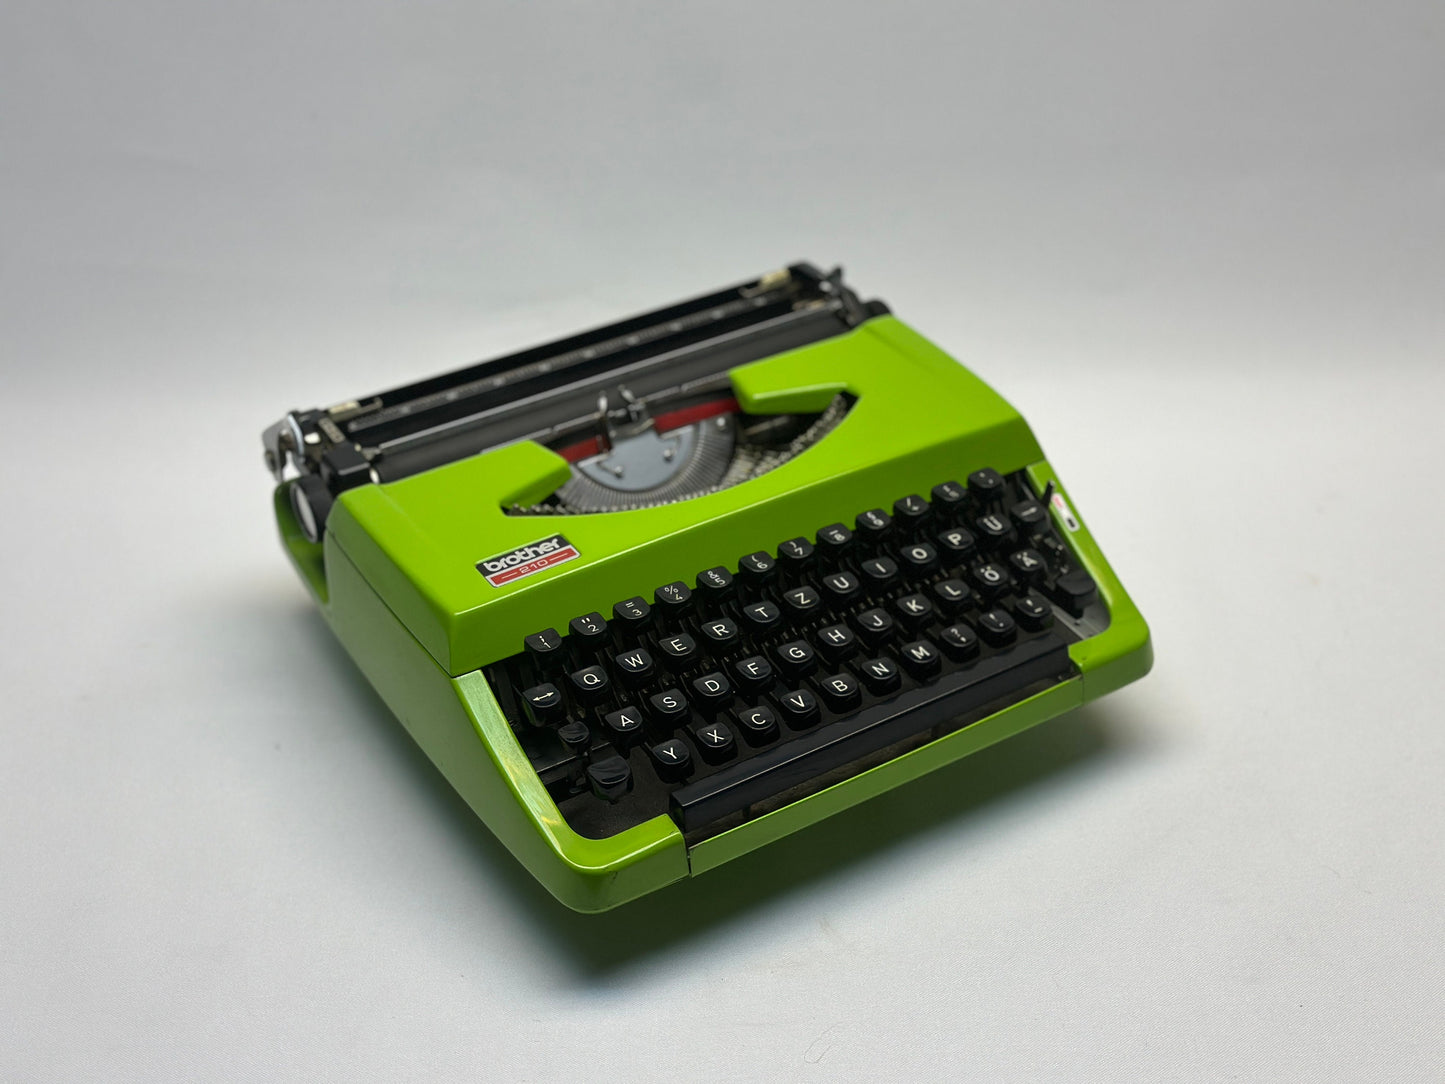 Green Brother Typewriter with Black Keyboard and Carrying Case,Antique Typewriter, typewriter working, type writer